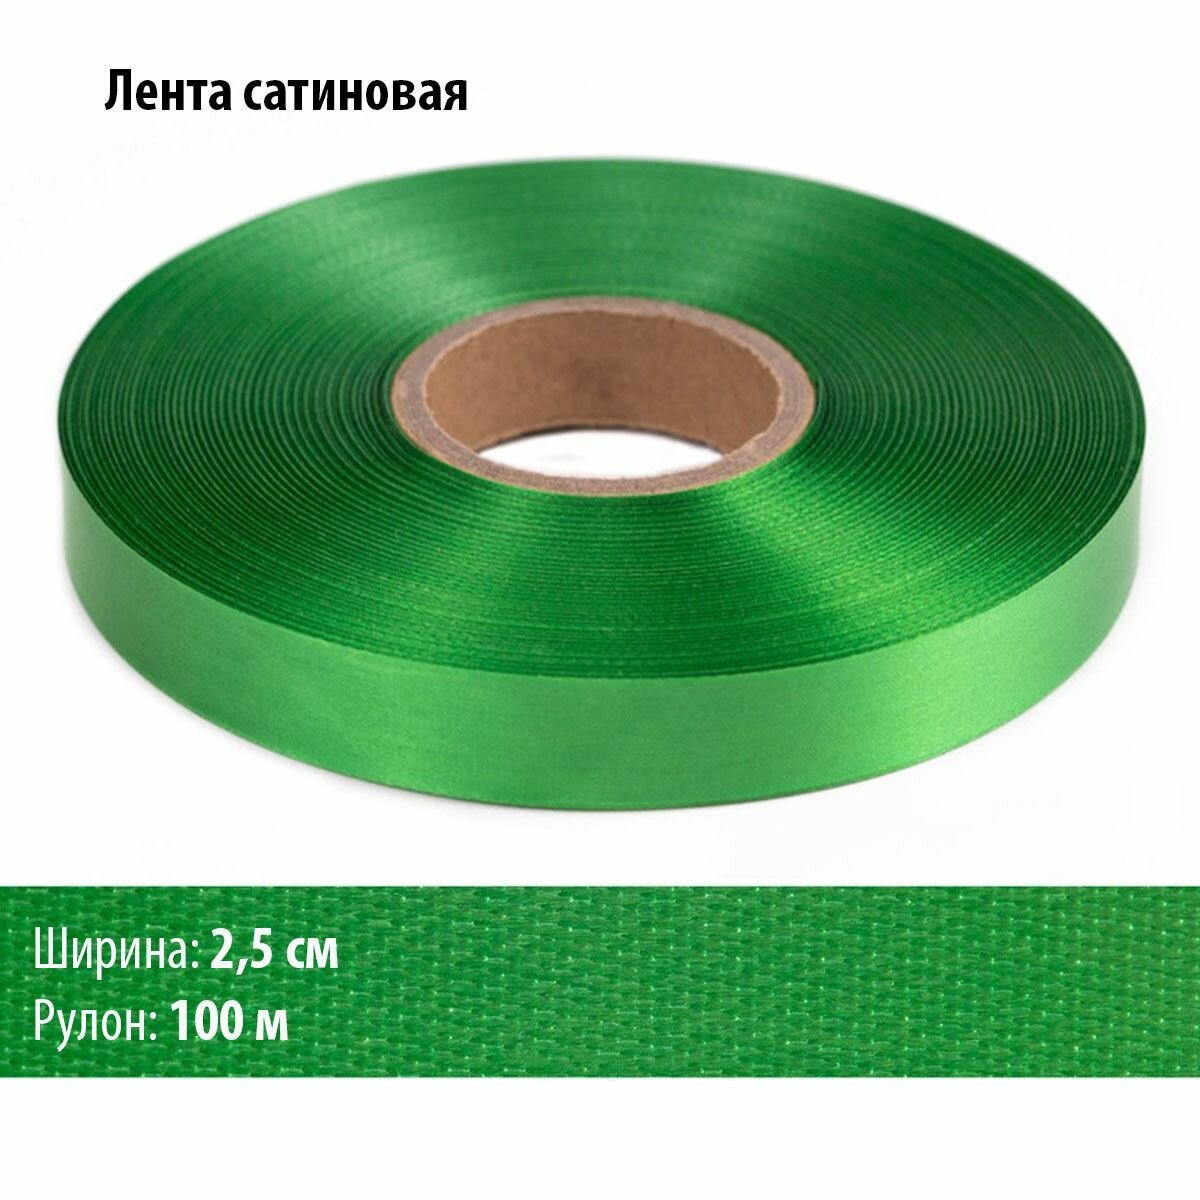 Лента сaтин ширина 2,5 см, зелёная, 100 метров